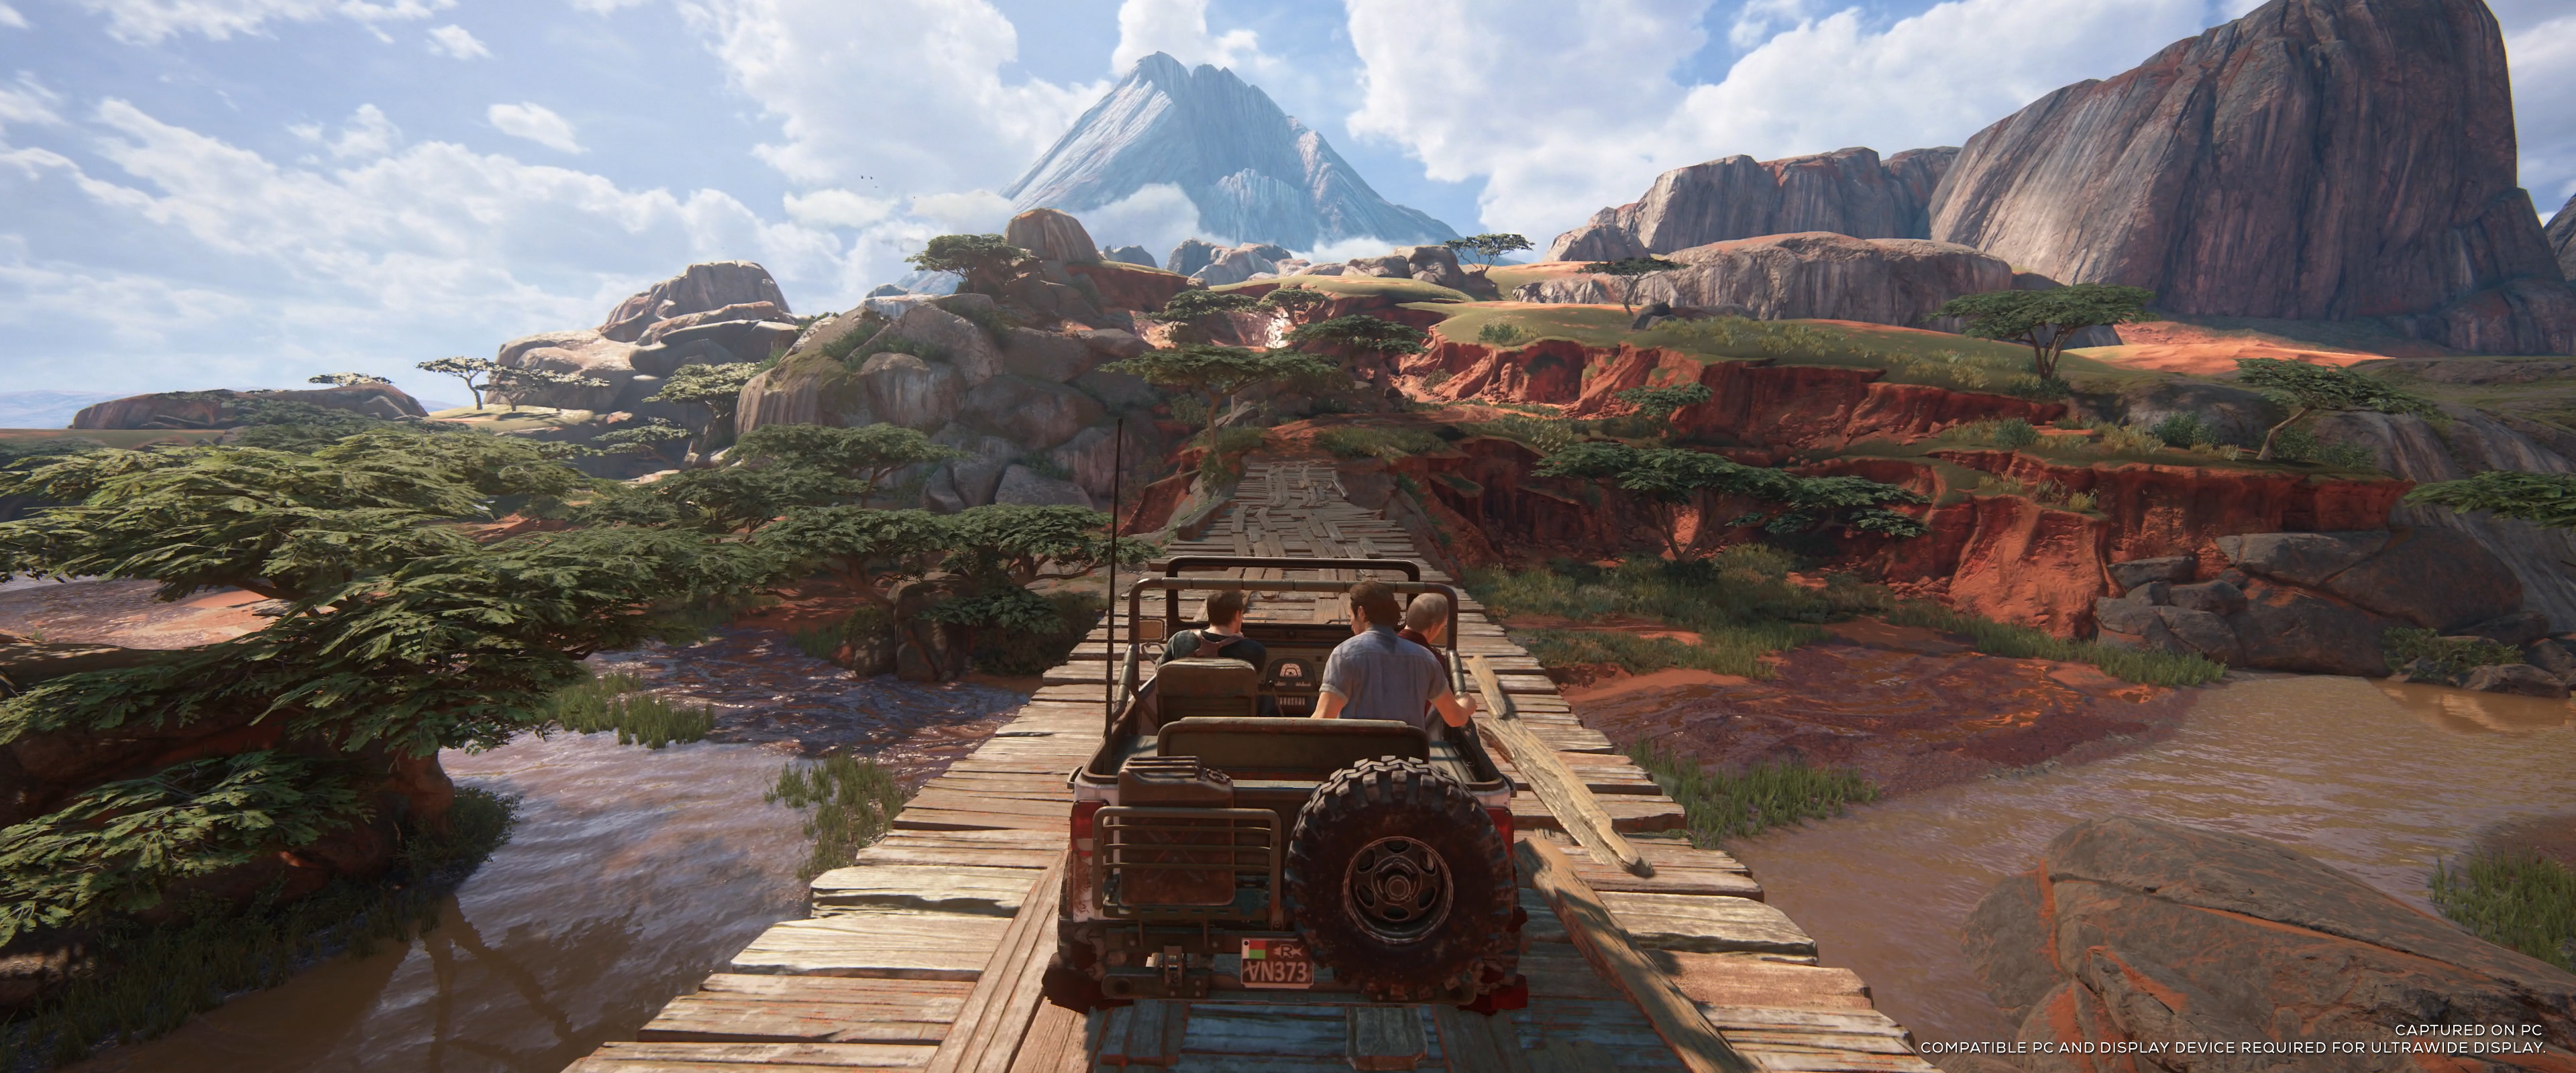 Ein Jeep fährt über eine Holzbrücke im Vordergrund, umgeben von einer üppigen Landschaft, die sich in die Ferne erstreckt. Erfordert einen kompatiblen PC und ein ultrabreites Anzeigegerät.